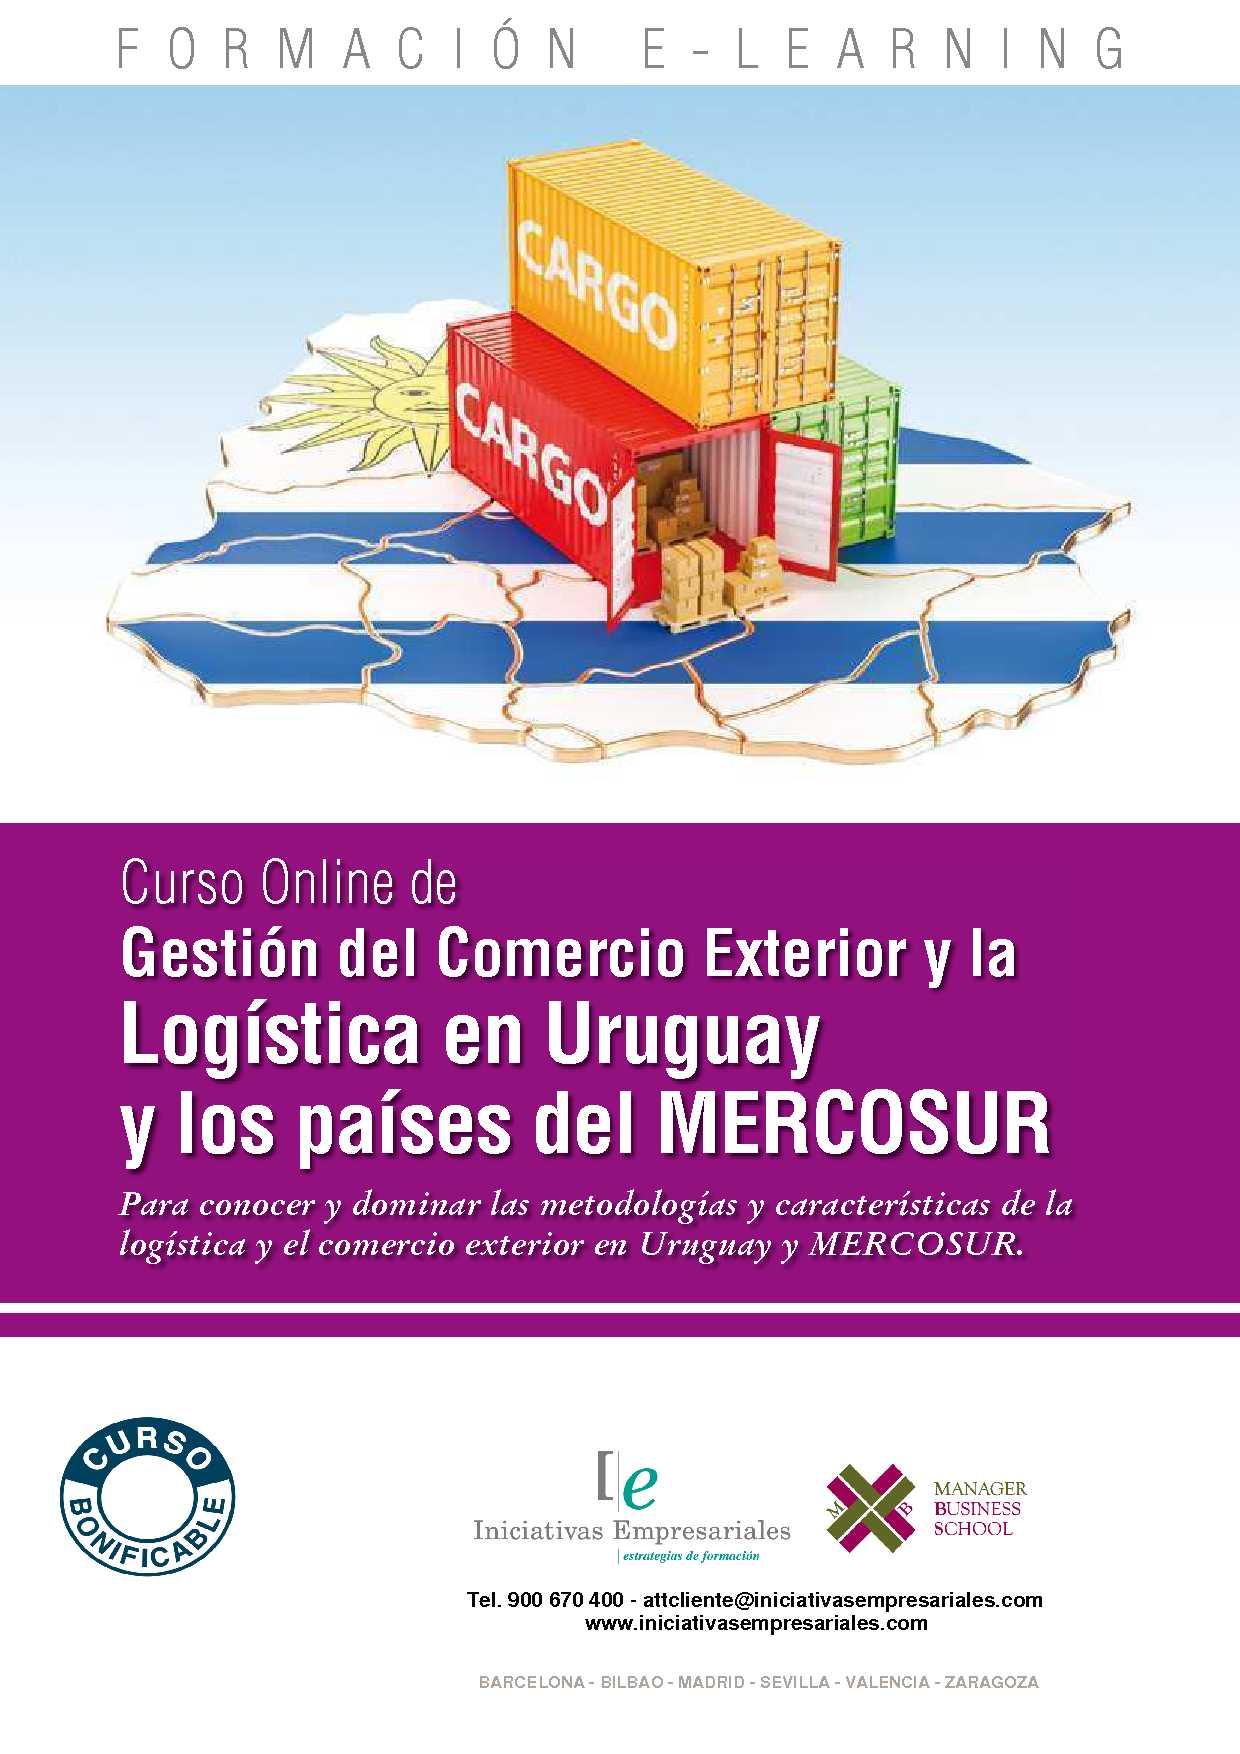 Gestión del Comercio Exterior y la Logística en Uruguay y los países del MERCOSUR